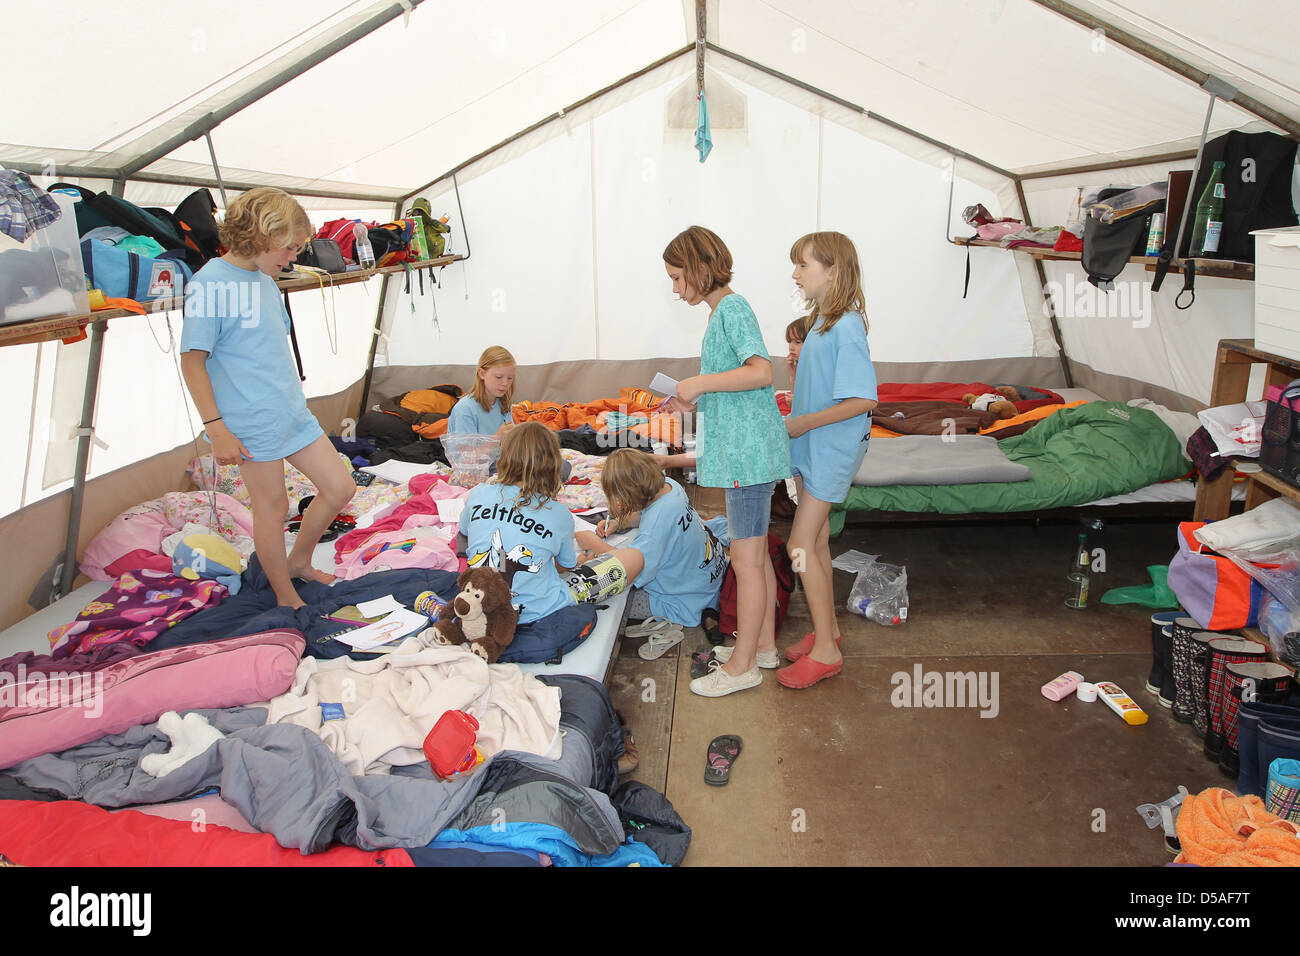 Ploen, Alemania, en el área metropolitana de las niñas en el campamento Adlerhorst Foto de stock